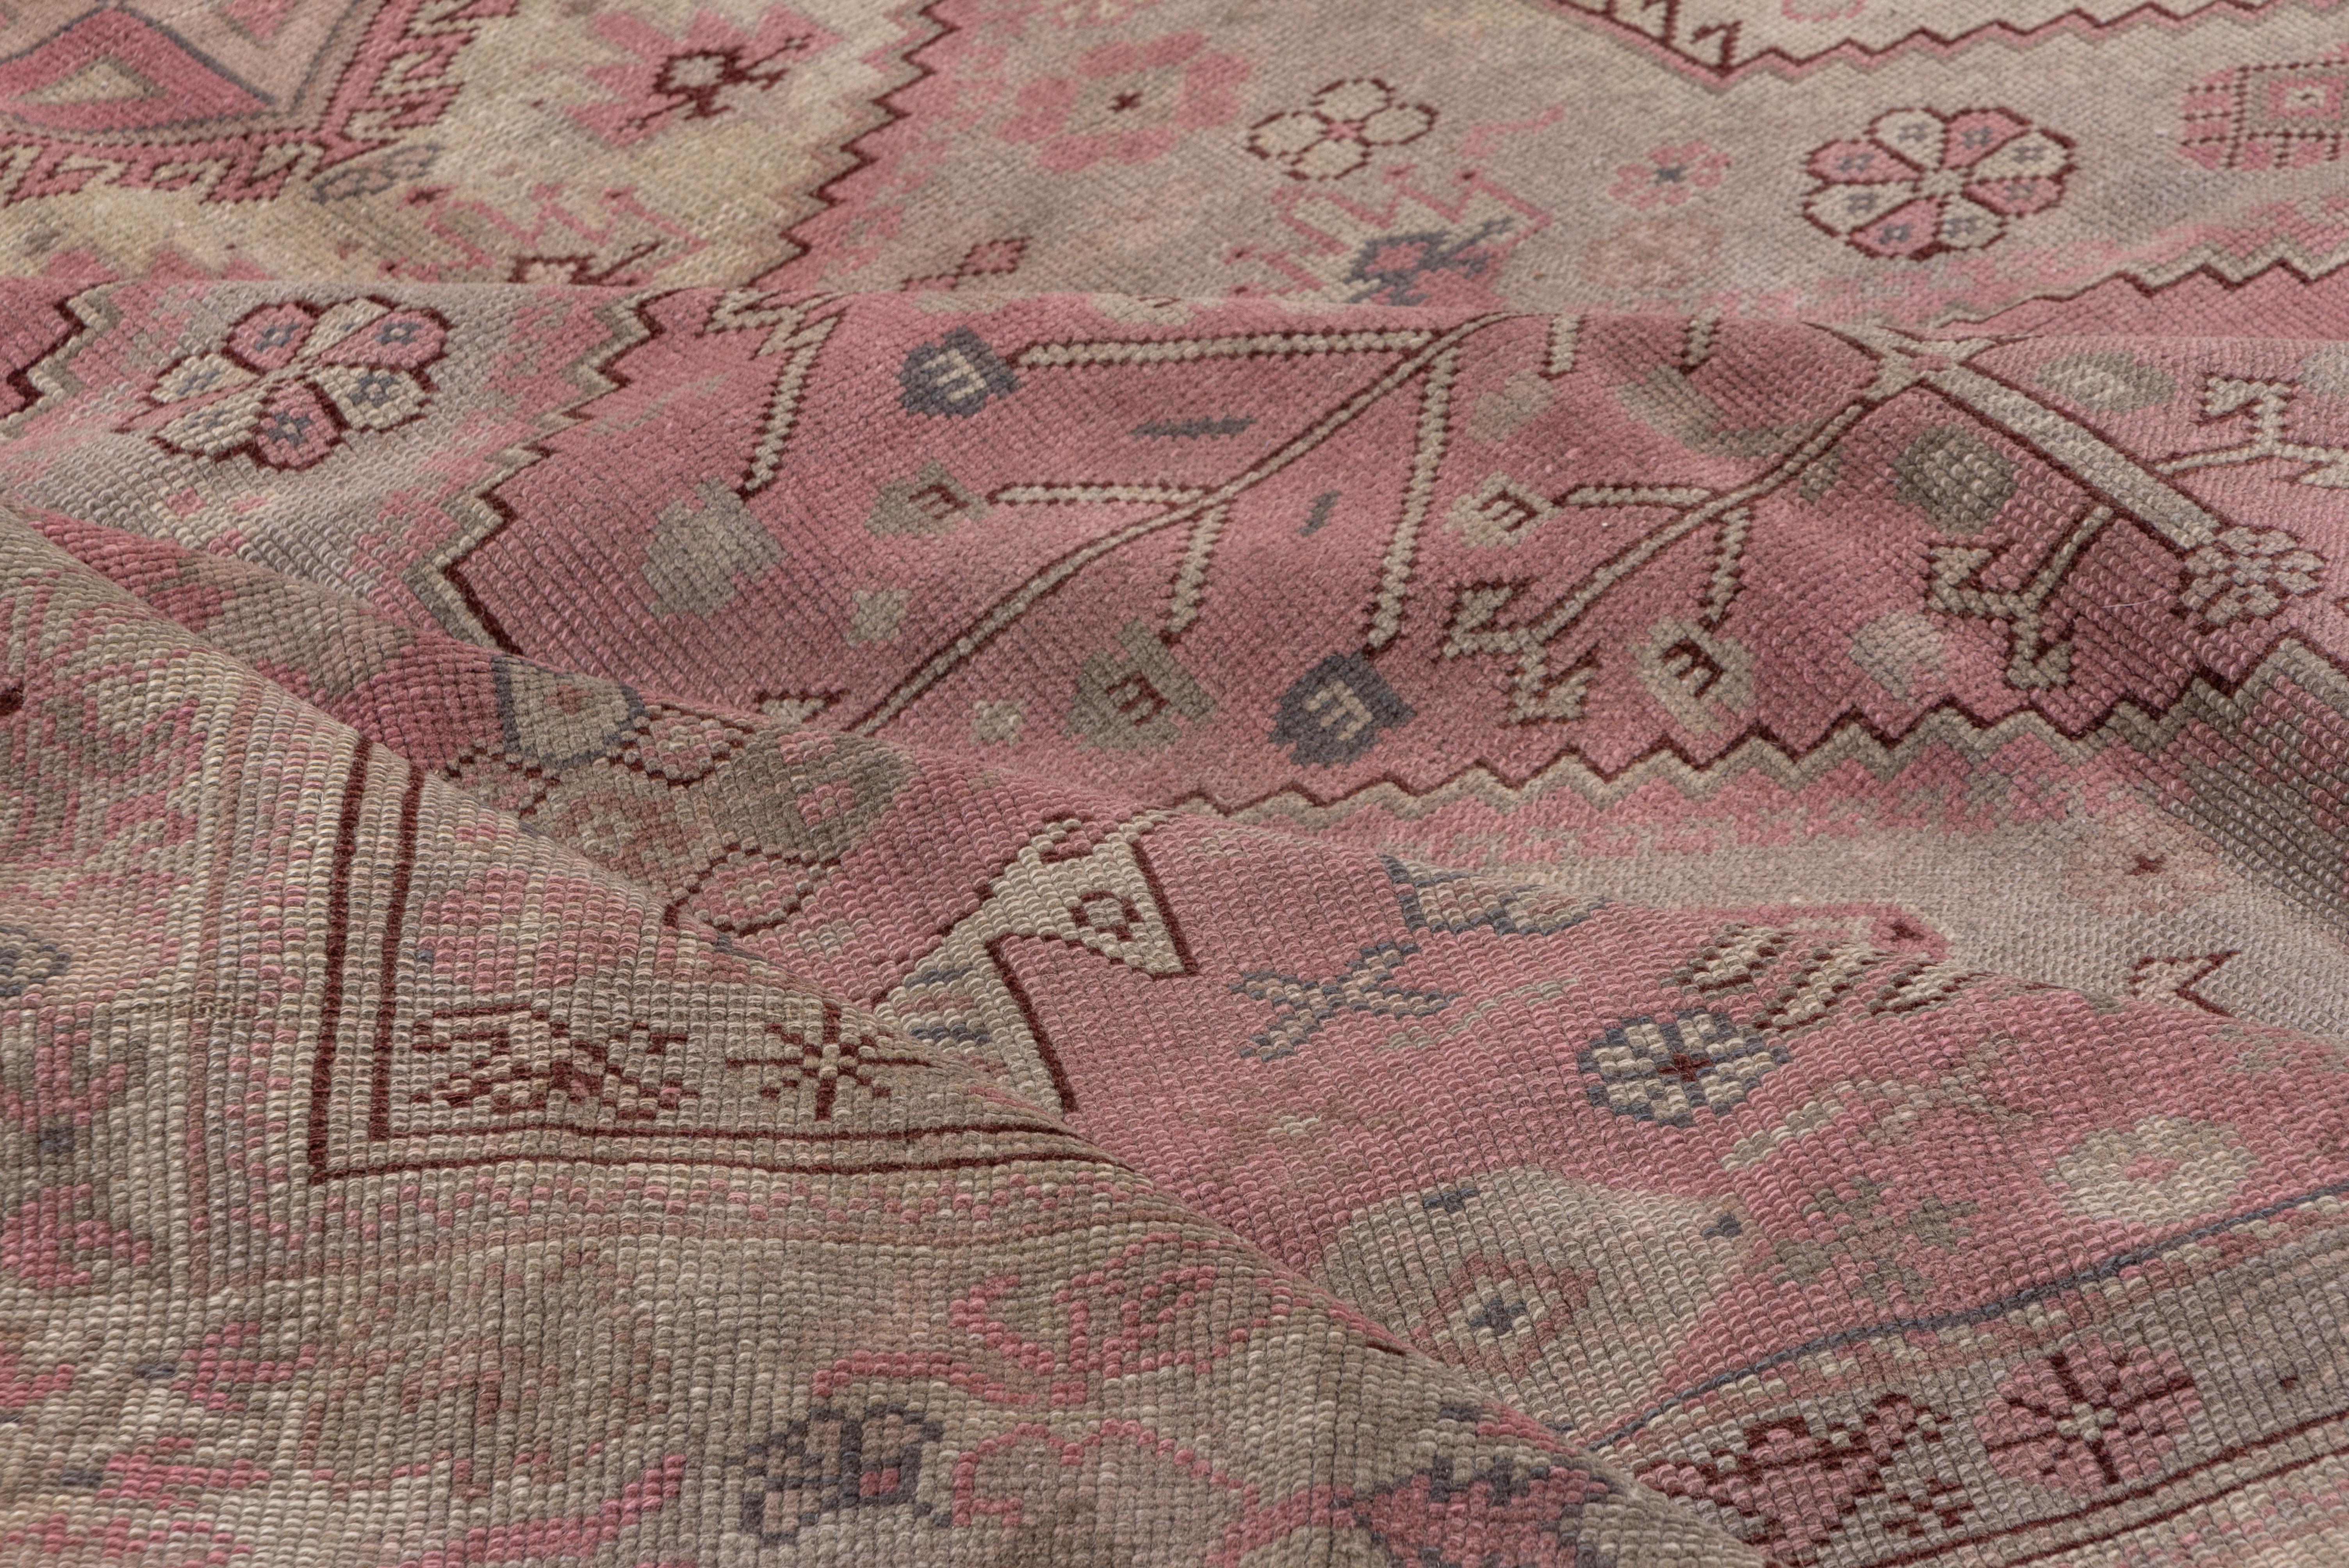 Ein überwiegend hell getönter anatolischer Teppich mit einem geometrischen Muster aus gestuften Sechsecken und seitlichen Füllungen in Stroh, Hellgrün und Rosa, mit Pferden in den Ecken und verstreuten Vögeln im persischen Stammesstil. Die